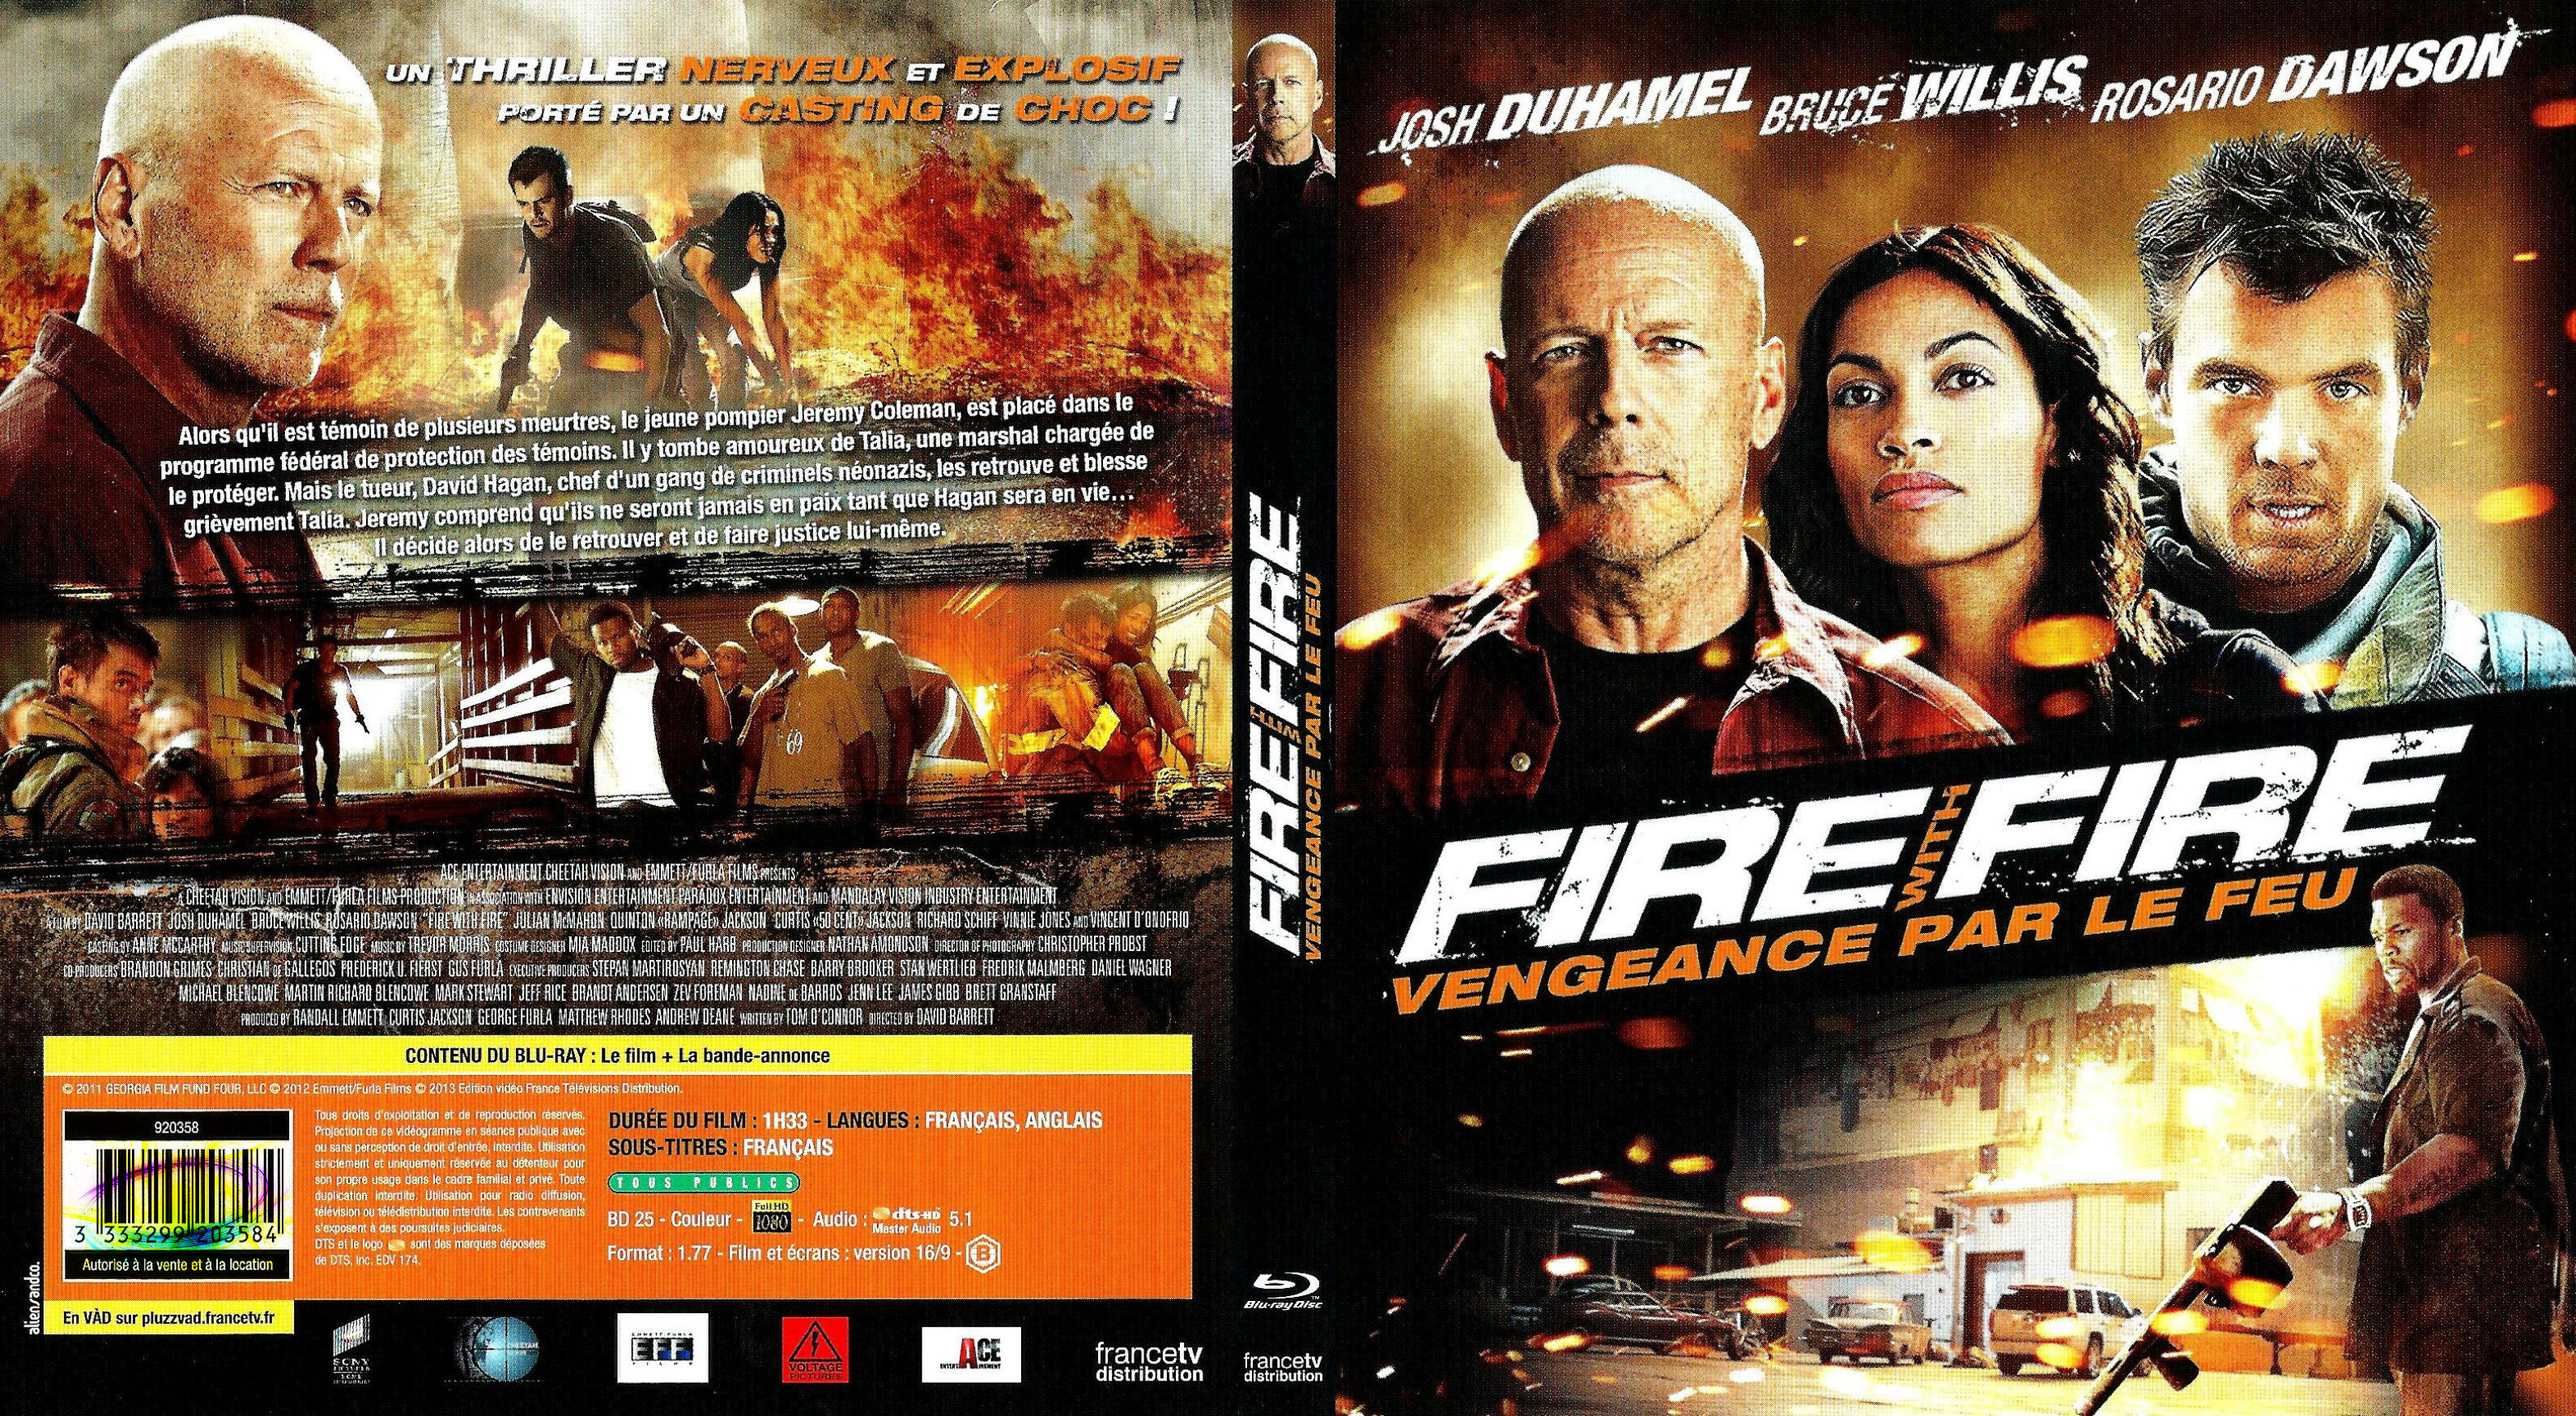 Jaquette DVD Fire with Fire vengeance par le feu (BLU-RAY)